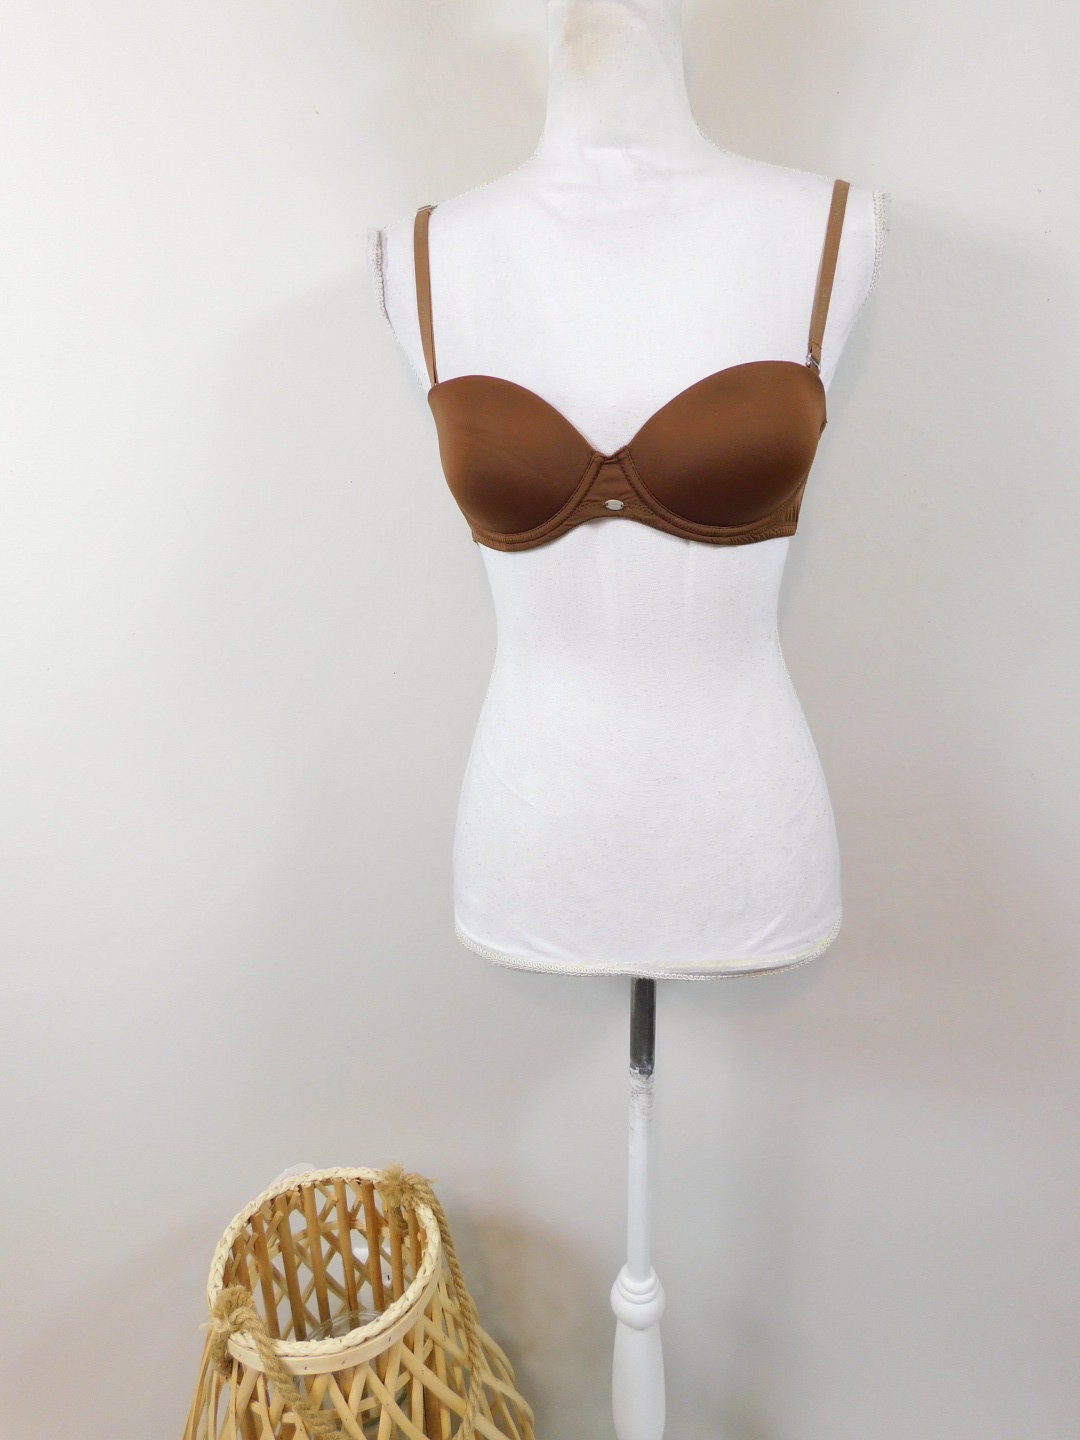 Sustainable Cotton Underwear Almond light Nude Low Rise Bikini Style Organic  Cotton 